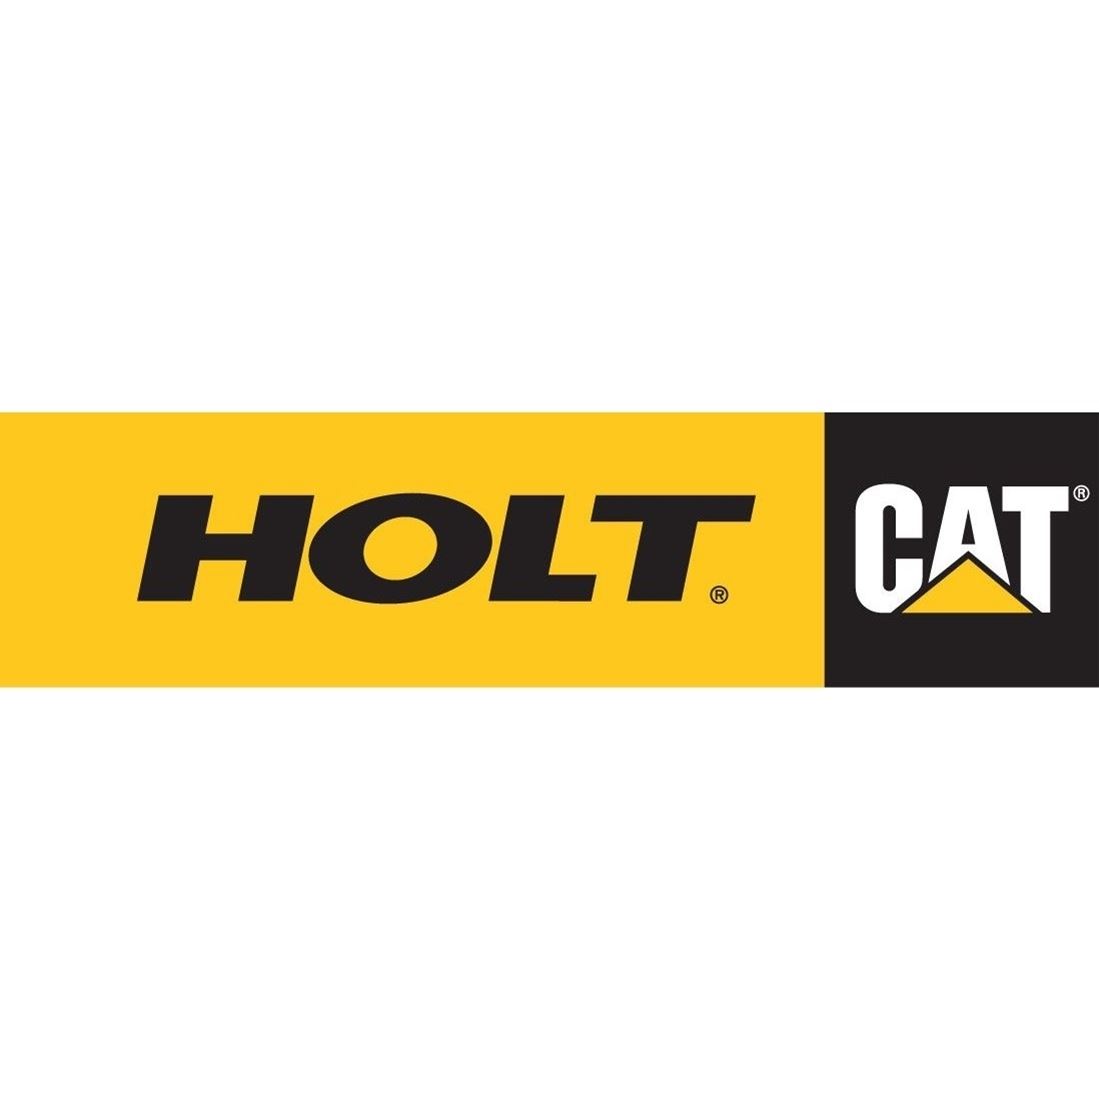 HoltCat